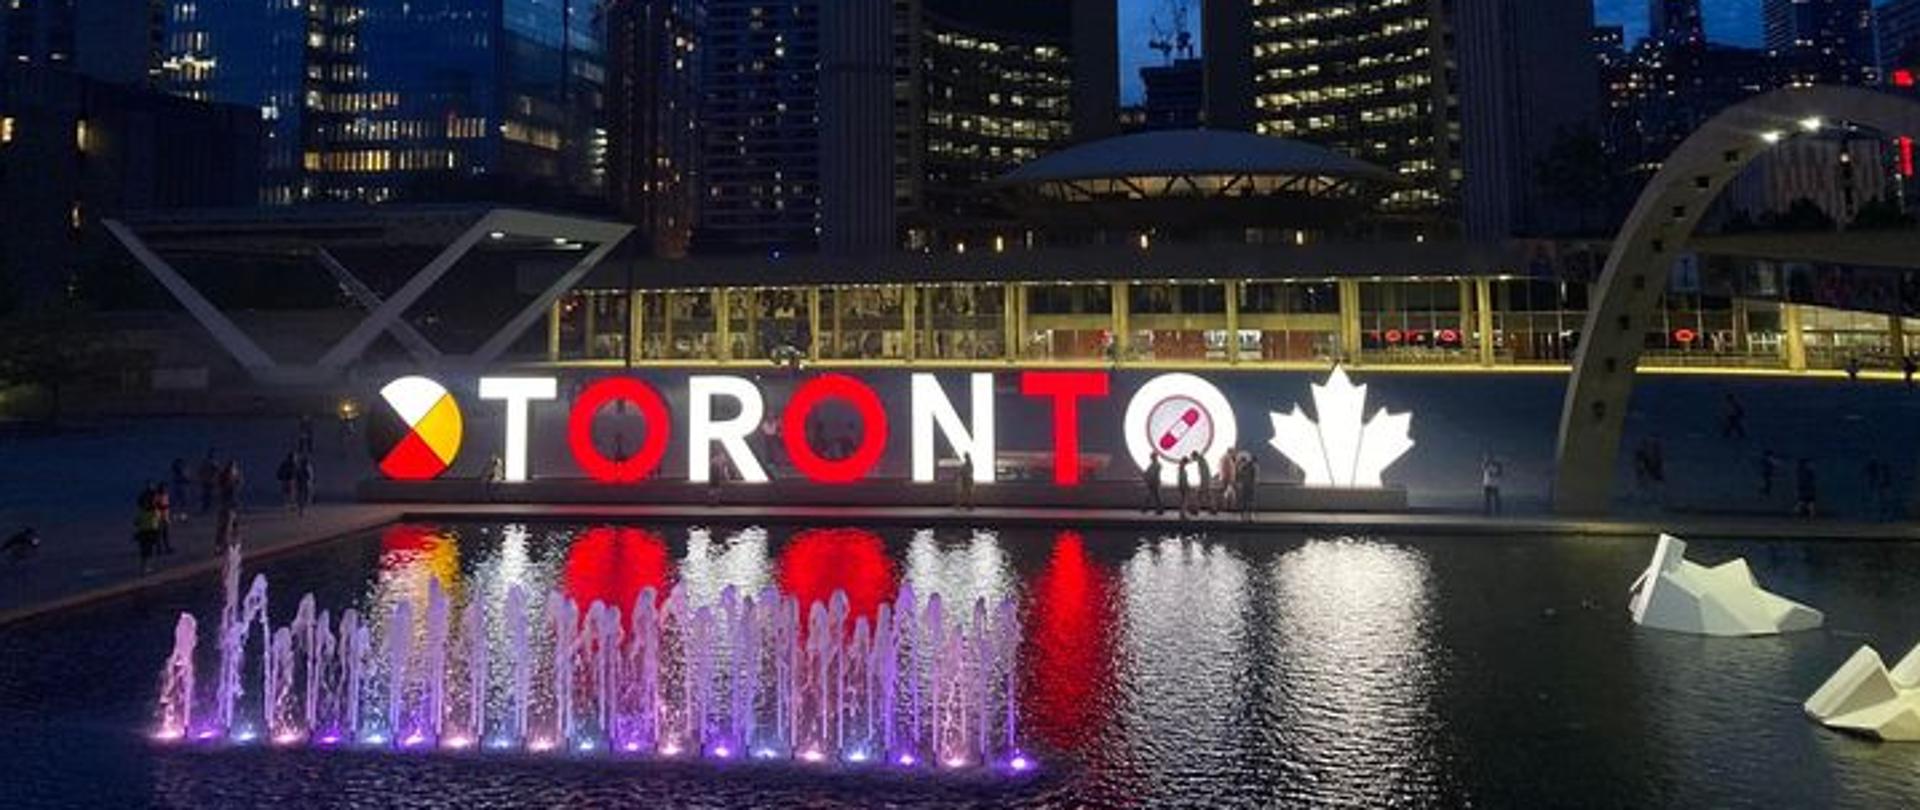 Podświetlenie Toronto